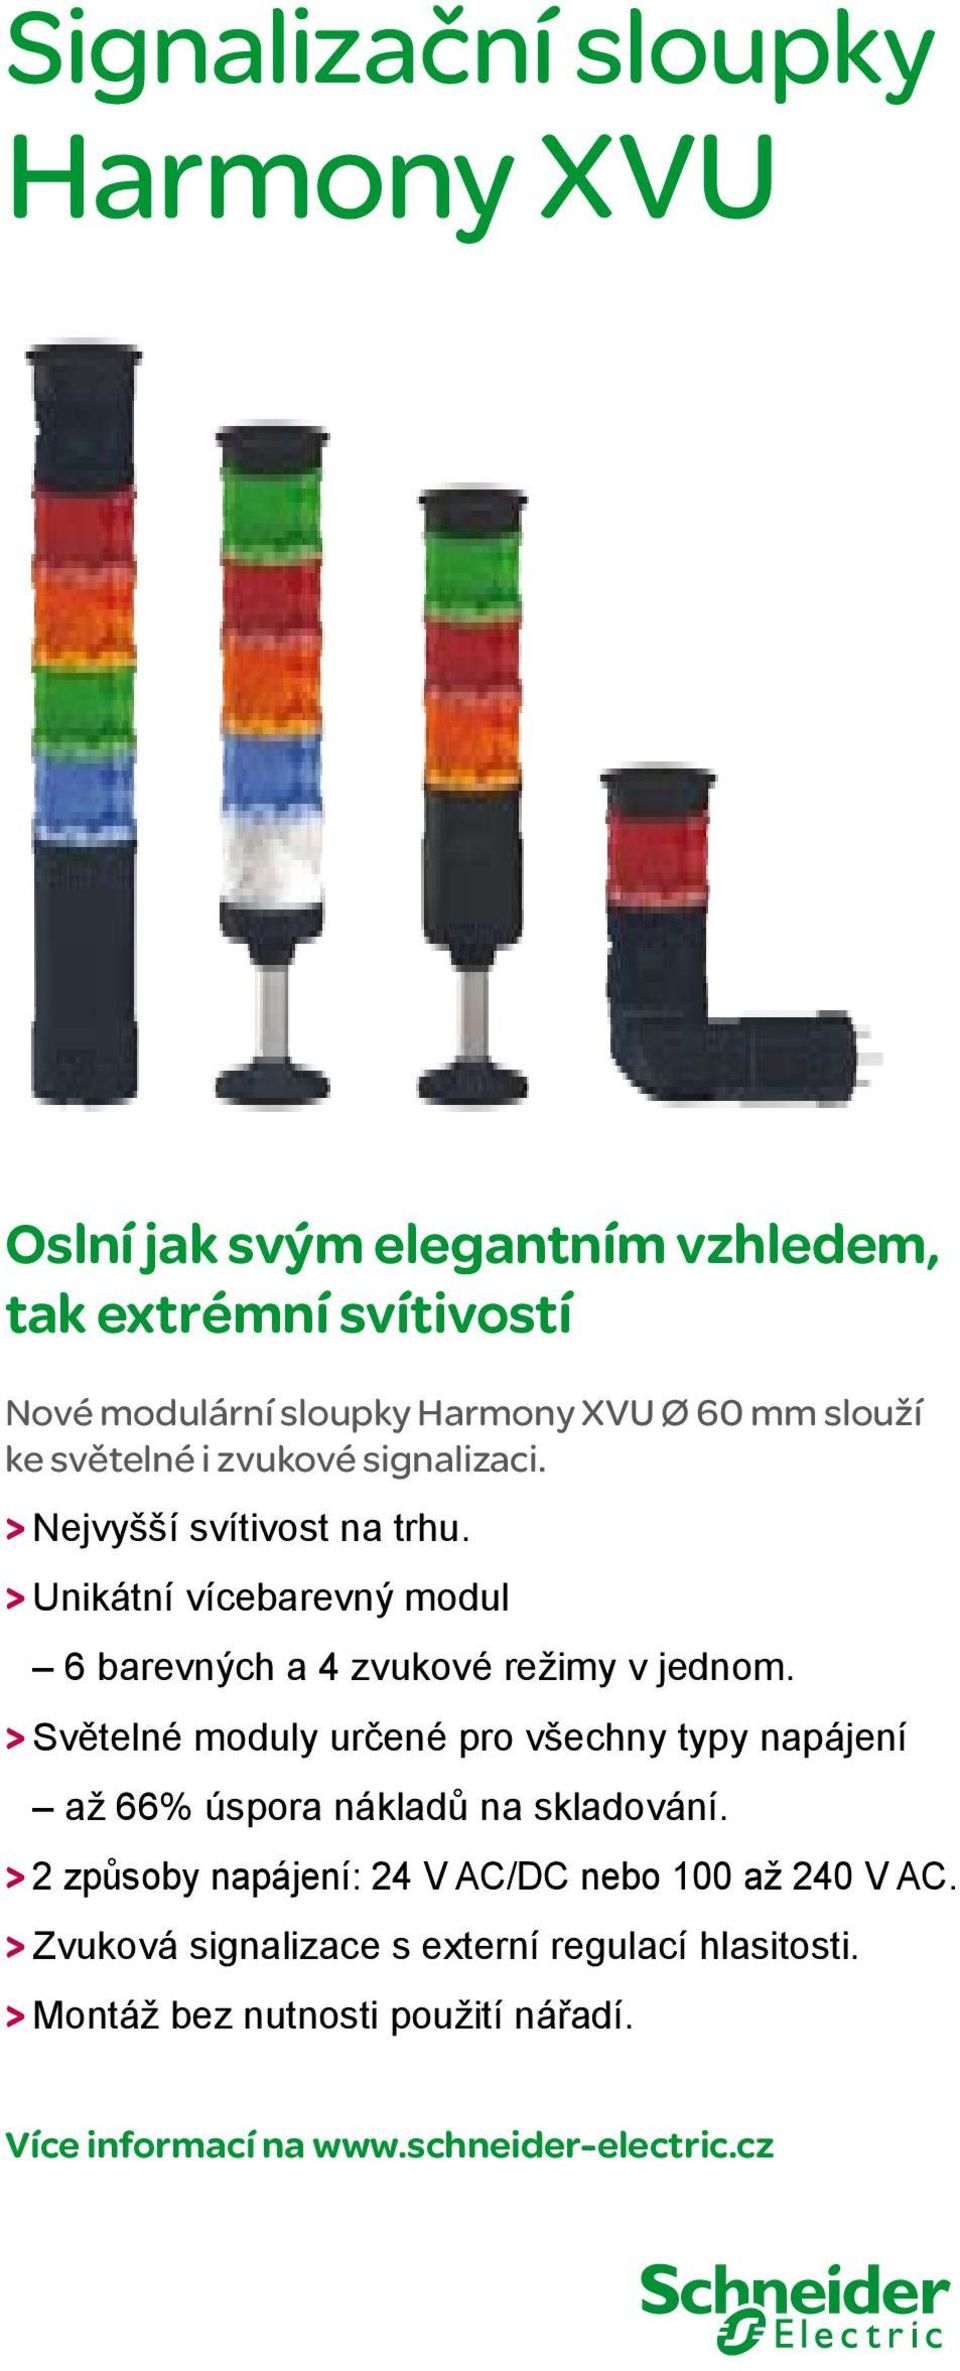 vzhledem, ke Nové světelné modulární i zvukové sloupky signalizaci. Harmony XVU Ø 60 mm slouží tak extrémní svítivostí > Nové ke Nejvyšší světelné modulární svítivost i zvukové sloupky na signalizaci.